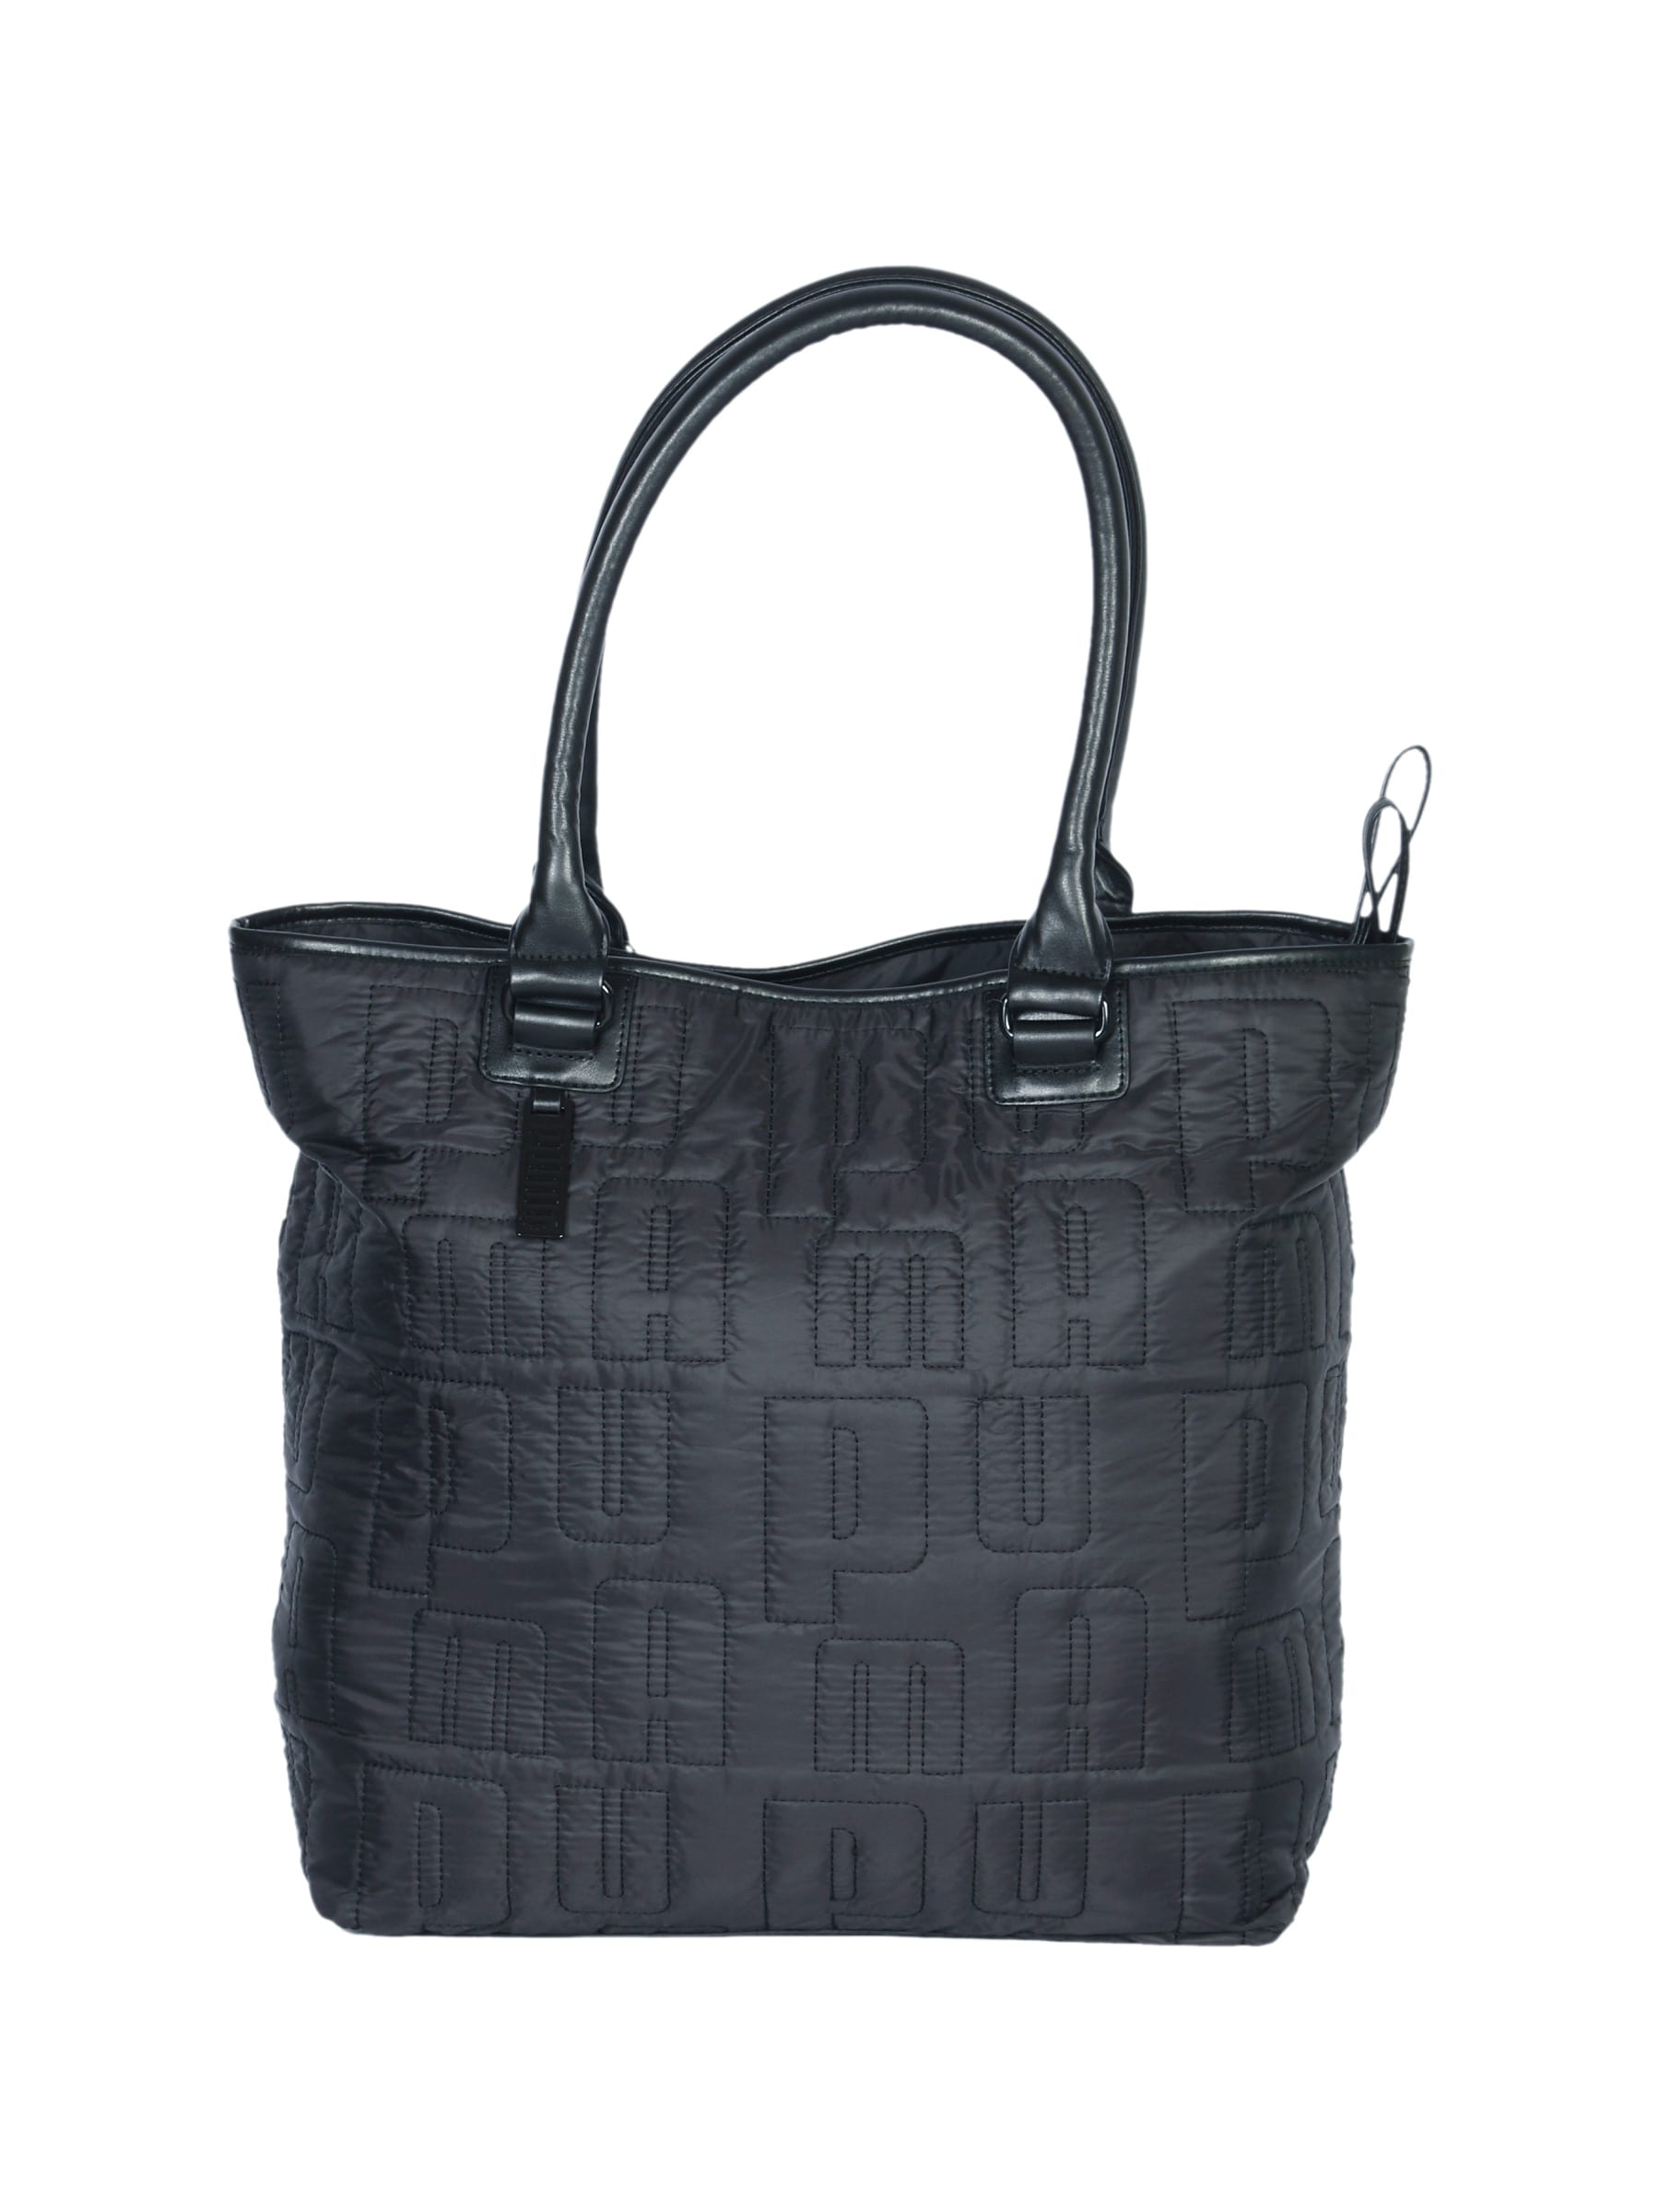 Puma Women Black Avenue Shopper Handbag